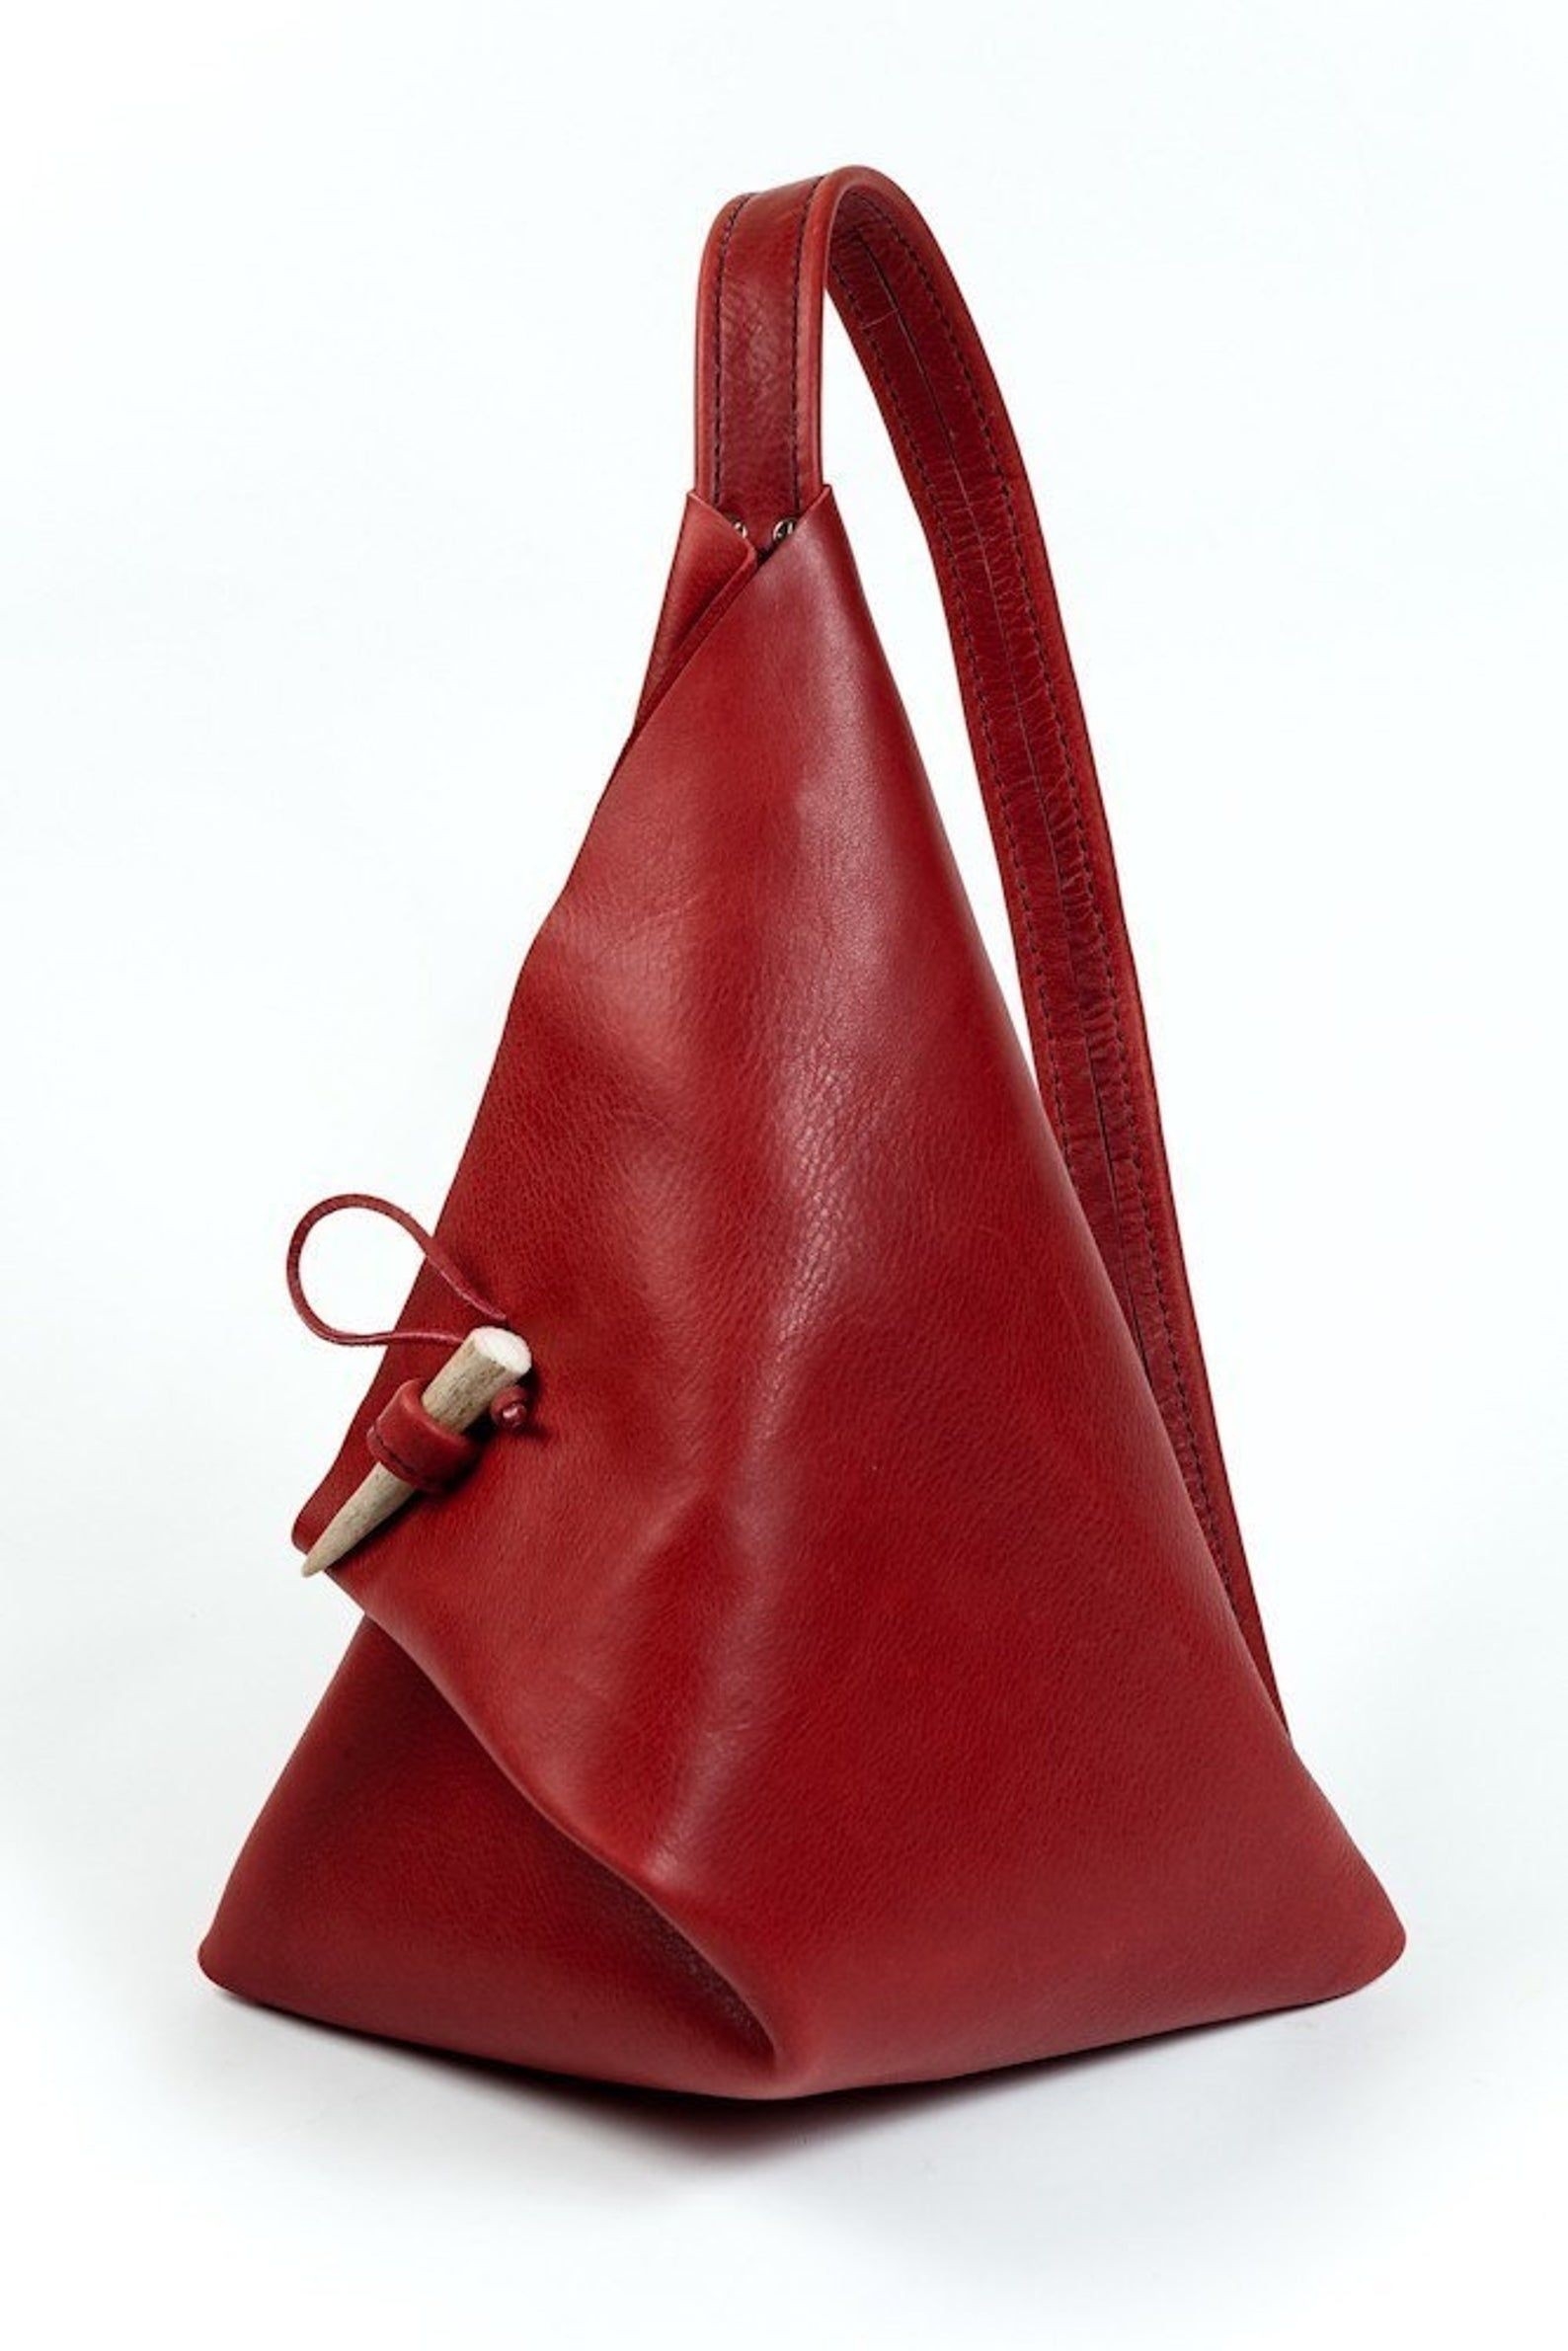 Genuine Leather Backpack Handbag Purse Sling Shoulder Bag Medium Size 